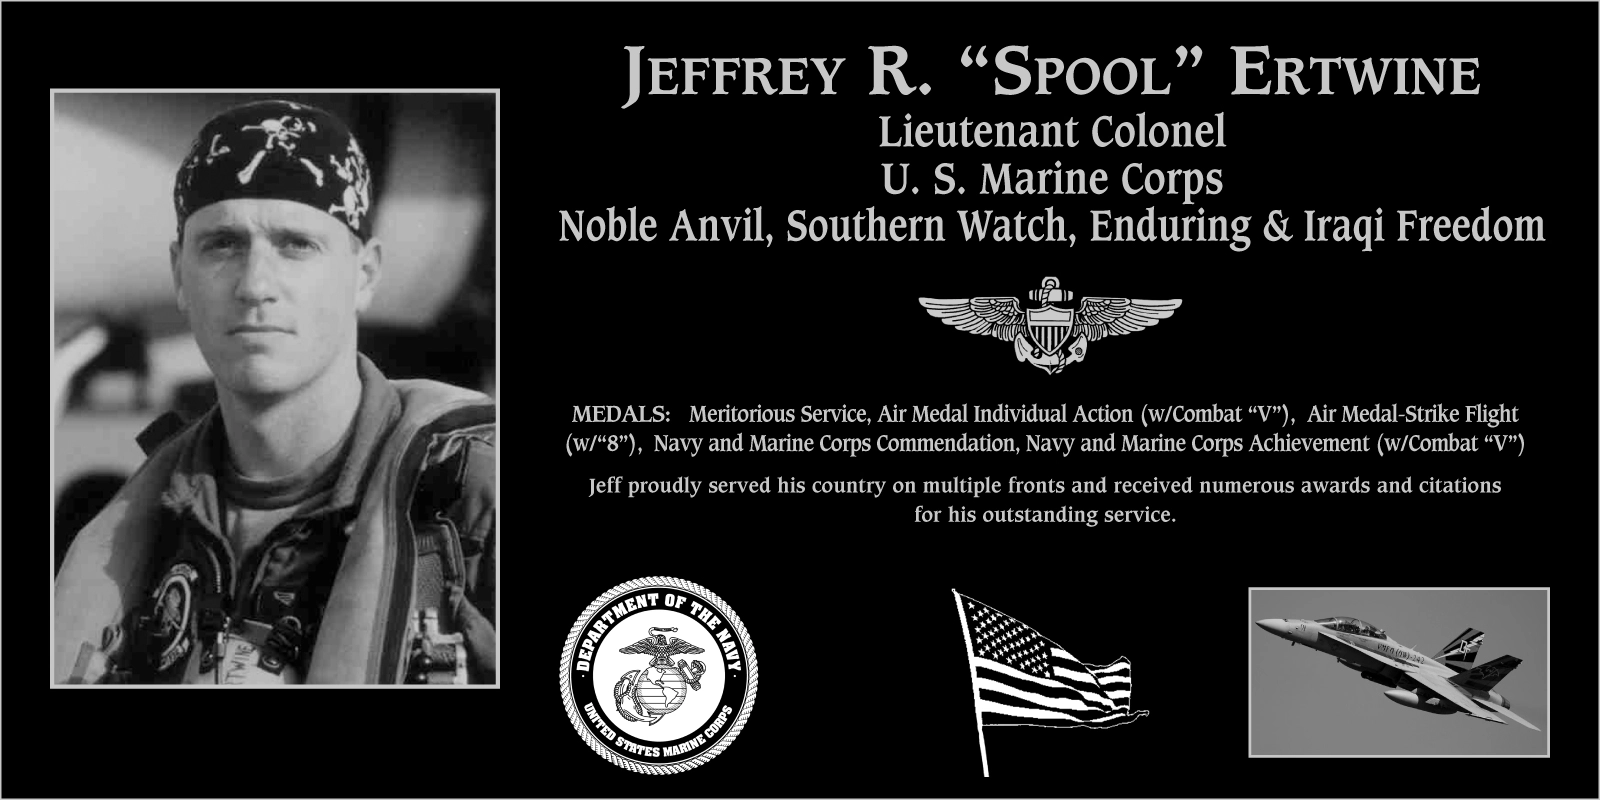 Jeffrey R. “Spool” Ertwine